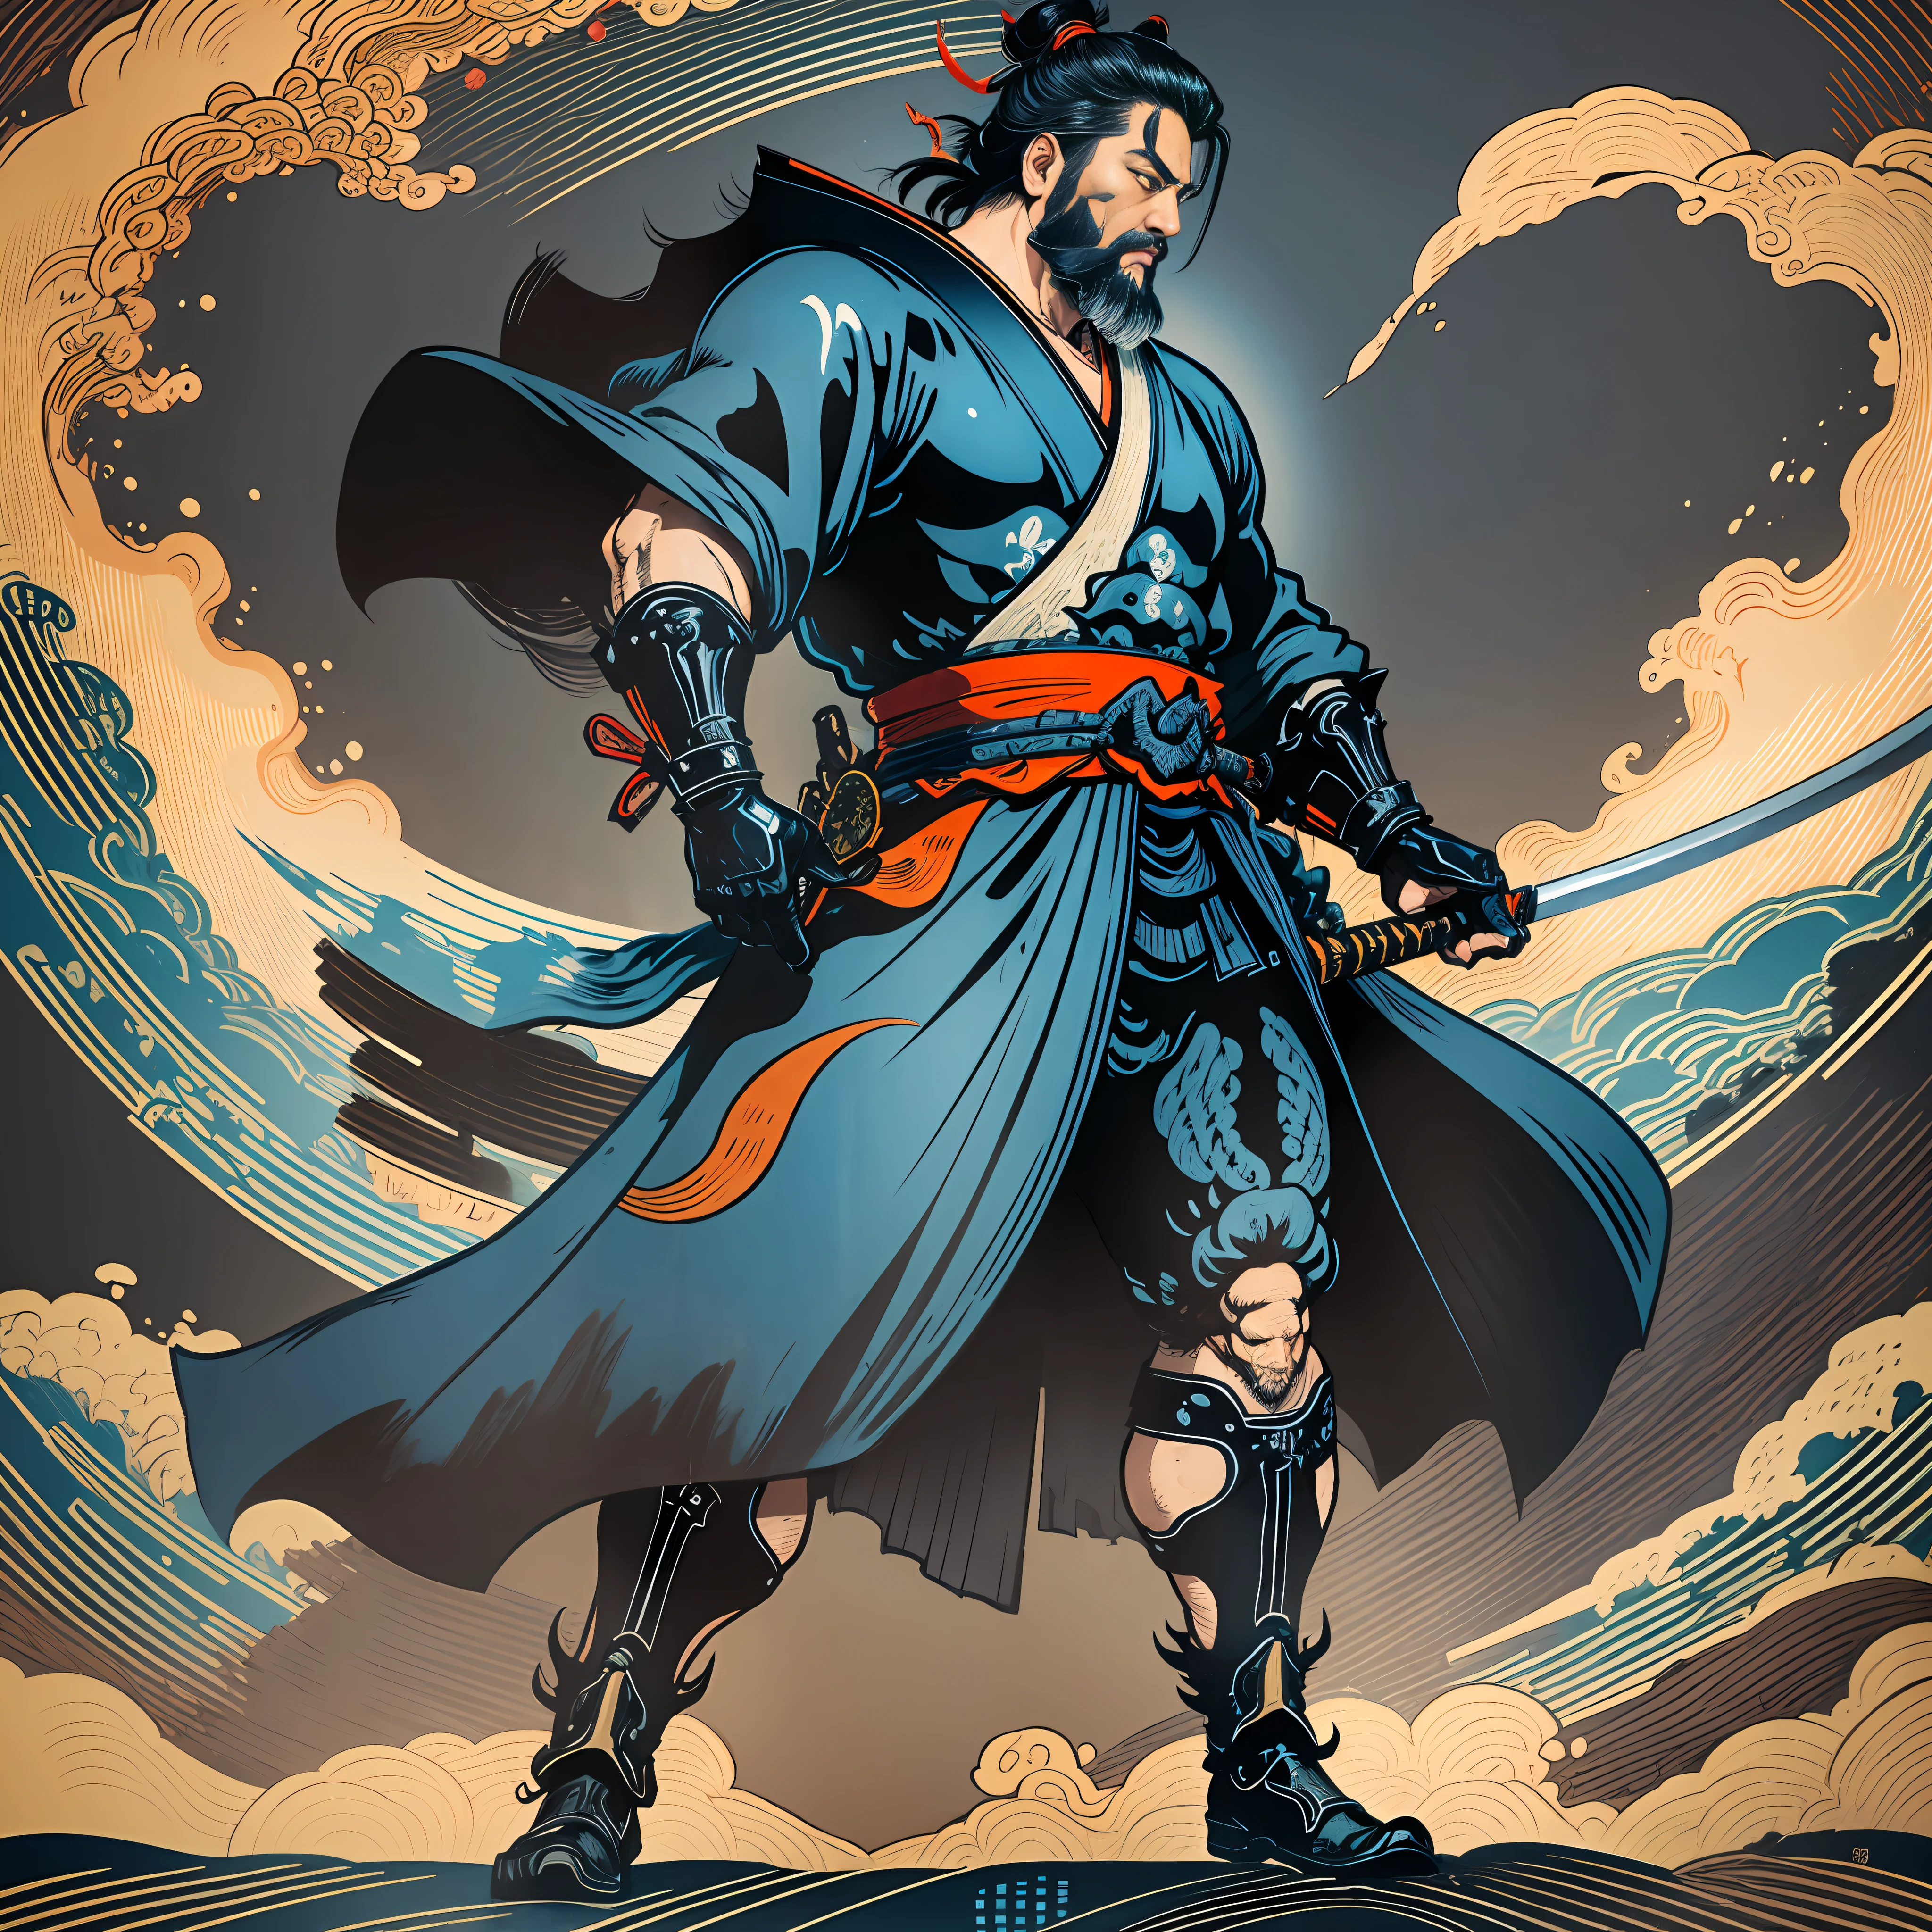 Il s&#39;agit d&#39;une peinture corporelle complète aux couleurs naturelles avec des dessins au trait de style Katsushika Hokusai.. L&#39;épéiste Miyamoto Musashi a un grand corps comme un homme fort. Samouraï du Japon. Avec une expression de détermination digne mais virile, il affronte les mauvais esprits. Il a les cheveux noirs courts et une coupe courte, barbe taillée. Le haut de son corps est recouvert d&#39;un kimono noir de jais à la texture brillante., et son hakama arrive jusqu&#39;aux genoux. Dans sa main droite, il tient une épée japonaise avec une partie d&#39;épée plus longue.. dans la plus haute qualité, chef-d&#39;œuvre haute résolution de style ukiyo-e, éclairs et flammes tourbillonnantes. Parmi eux, Miyamoto Musashi est debout, le dos droit, Face à l&#39;avant.